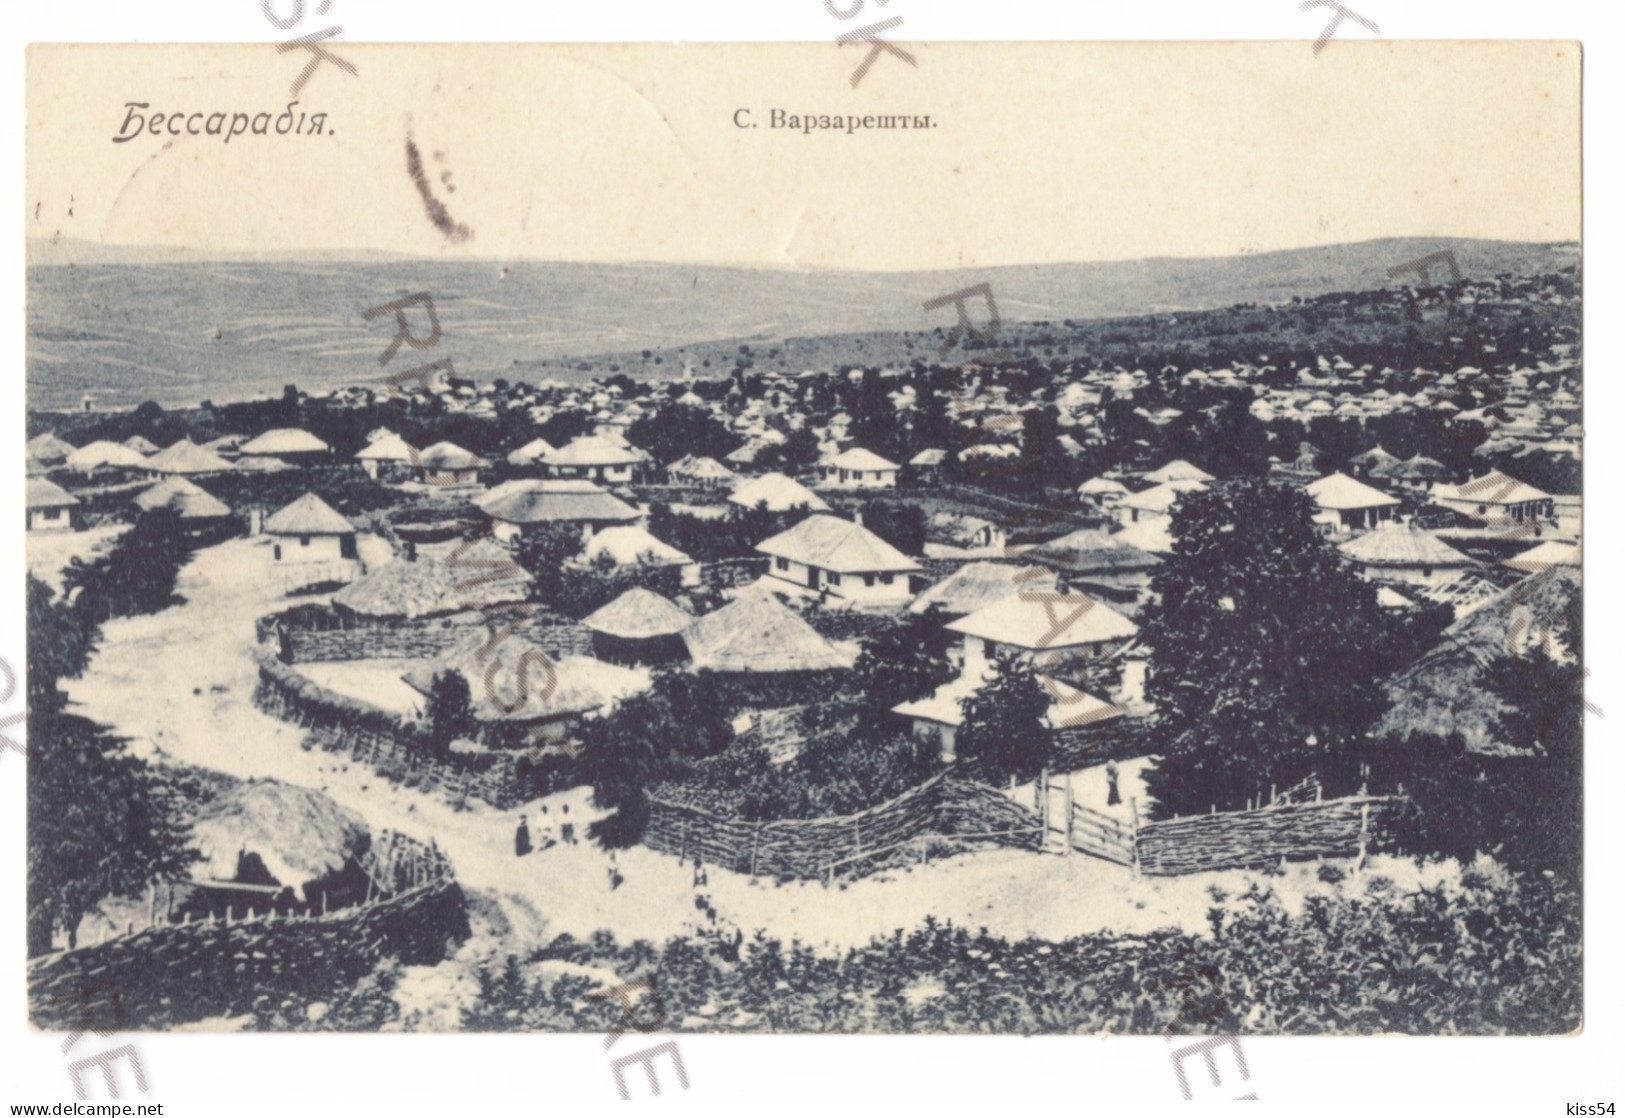 MOL 3 - 19690 MOLDOVA, Bassarabia, Panorama - Old Postcard - Used - 1905 - Moldavië